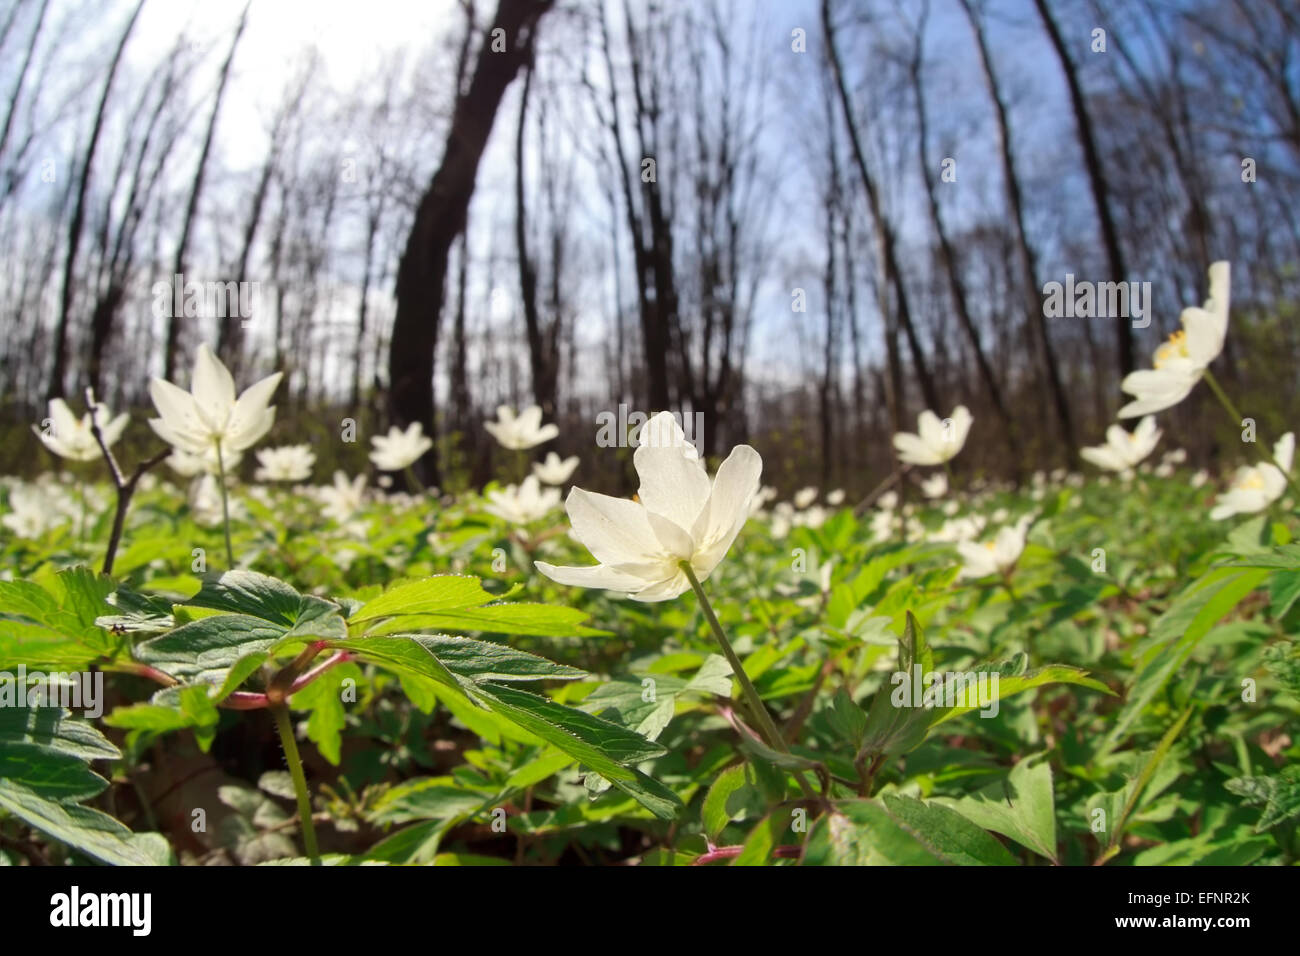 Anemone fiori selvatici nella foresta di primavera Foto Stock